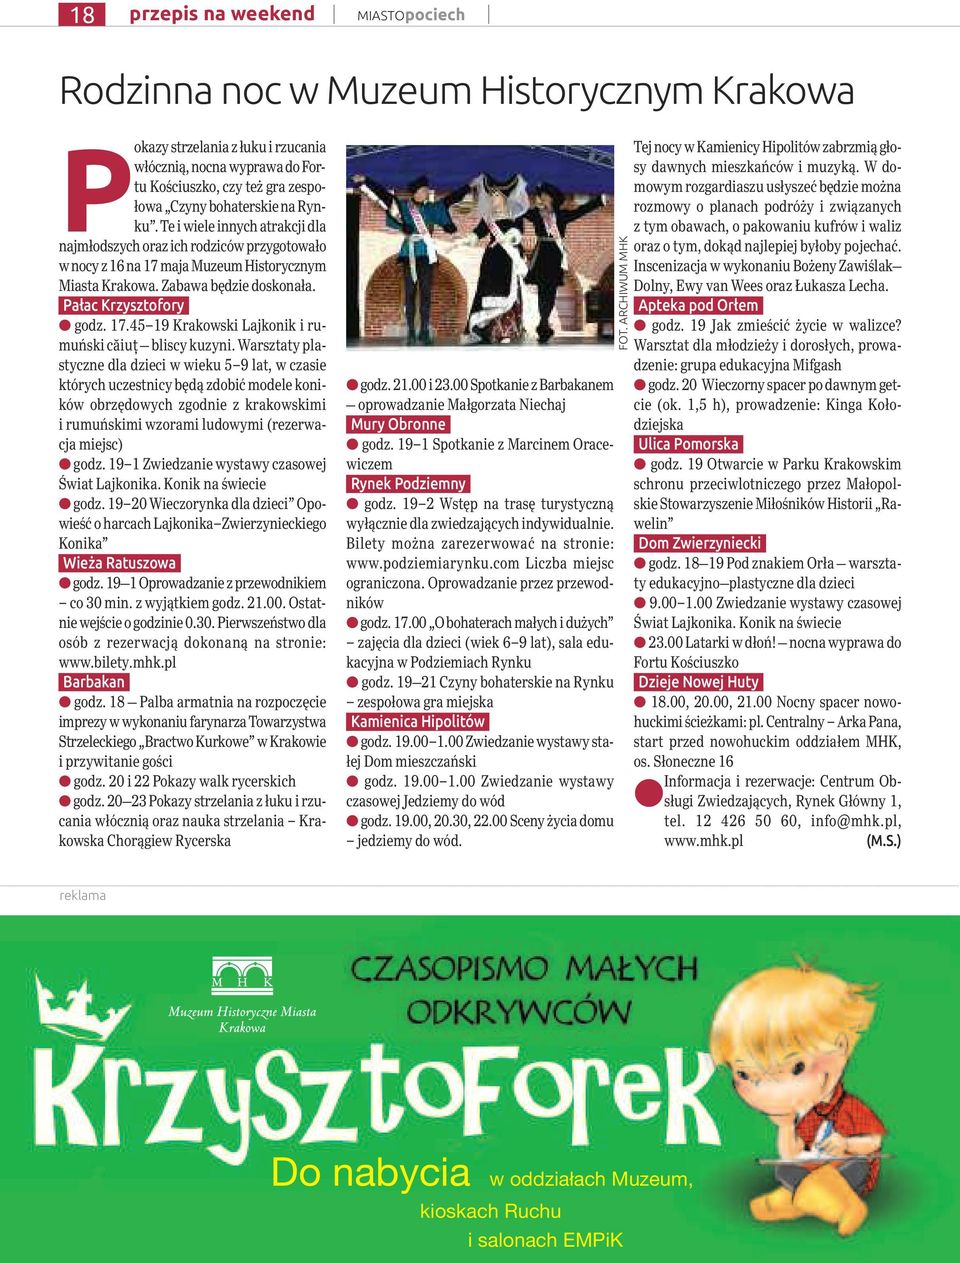 Warsztaty plastyczne dla dzieci w wieku 5 9 lat, w czasie których uczestnicy będą zdobić modele koników obrzędowych zgodnie z krakowskimi i rumuńskimi wzorami ludowymi (rezerwacja miejsc) godz.